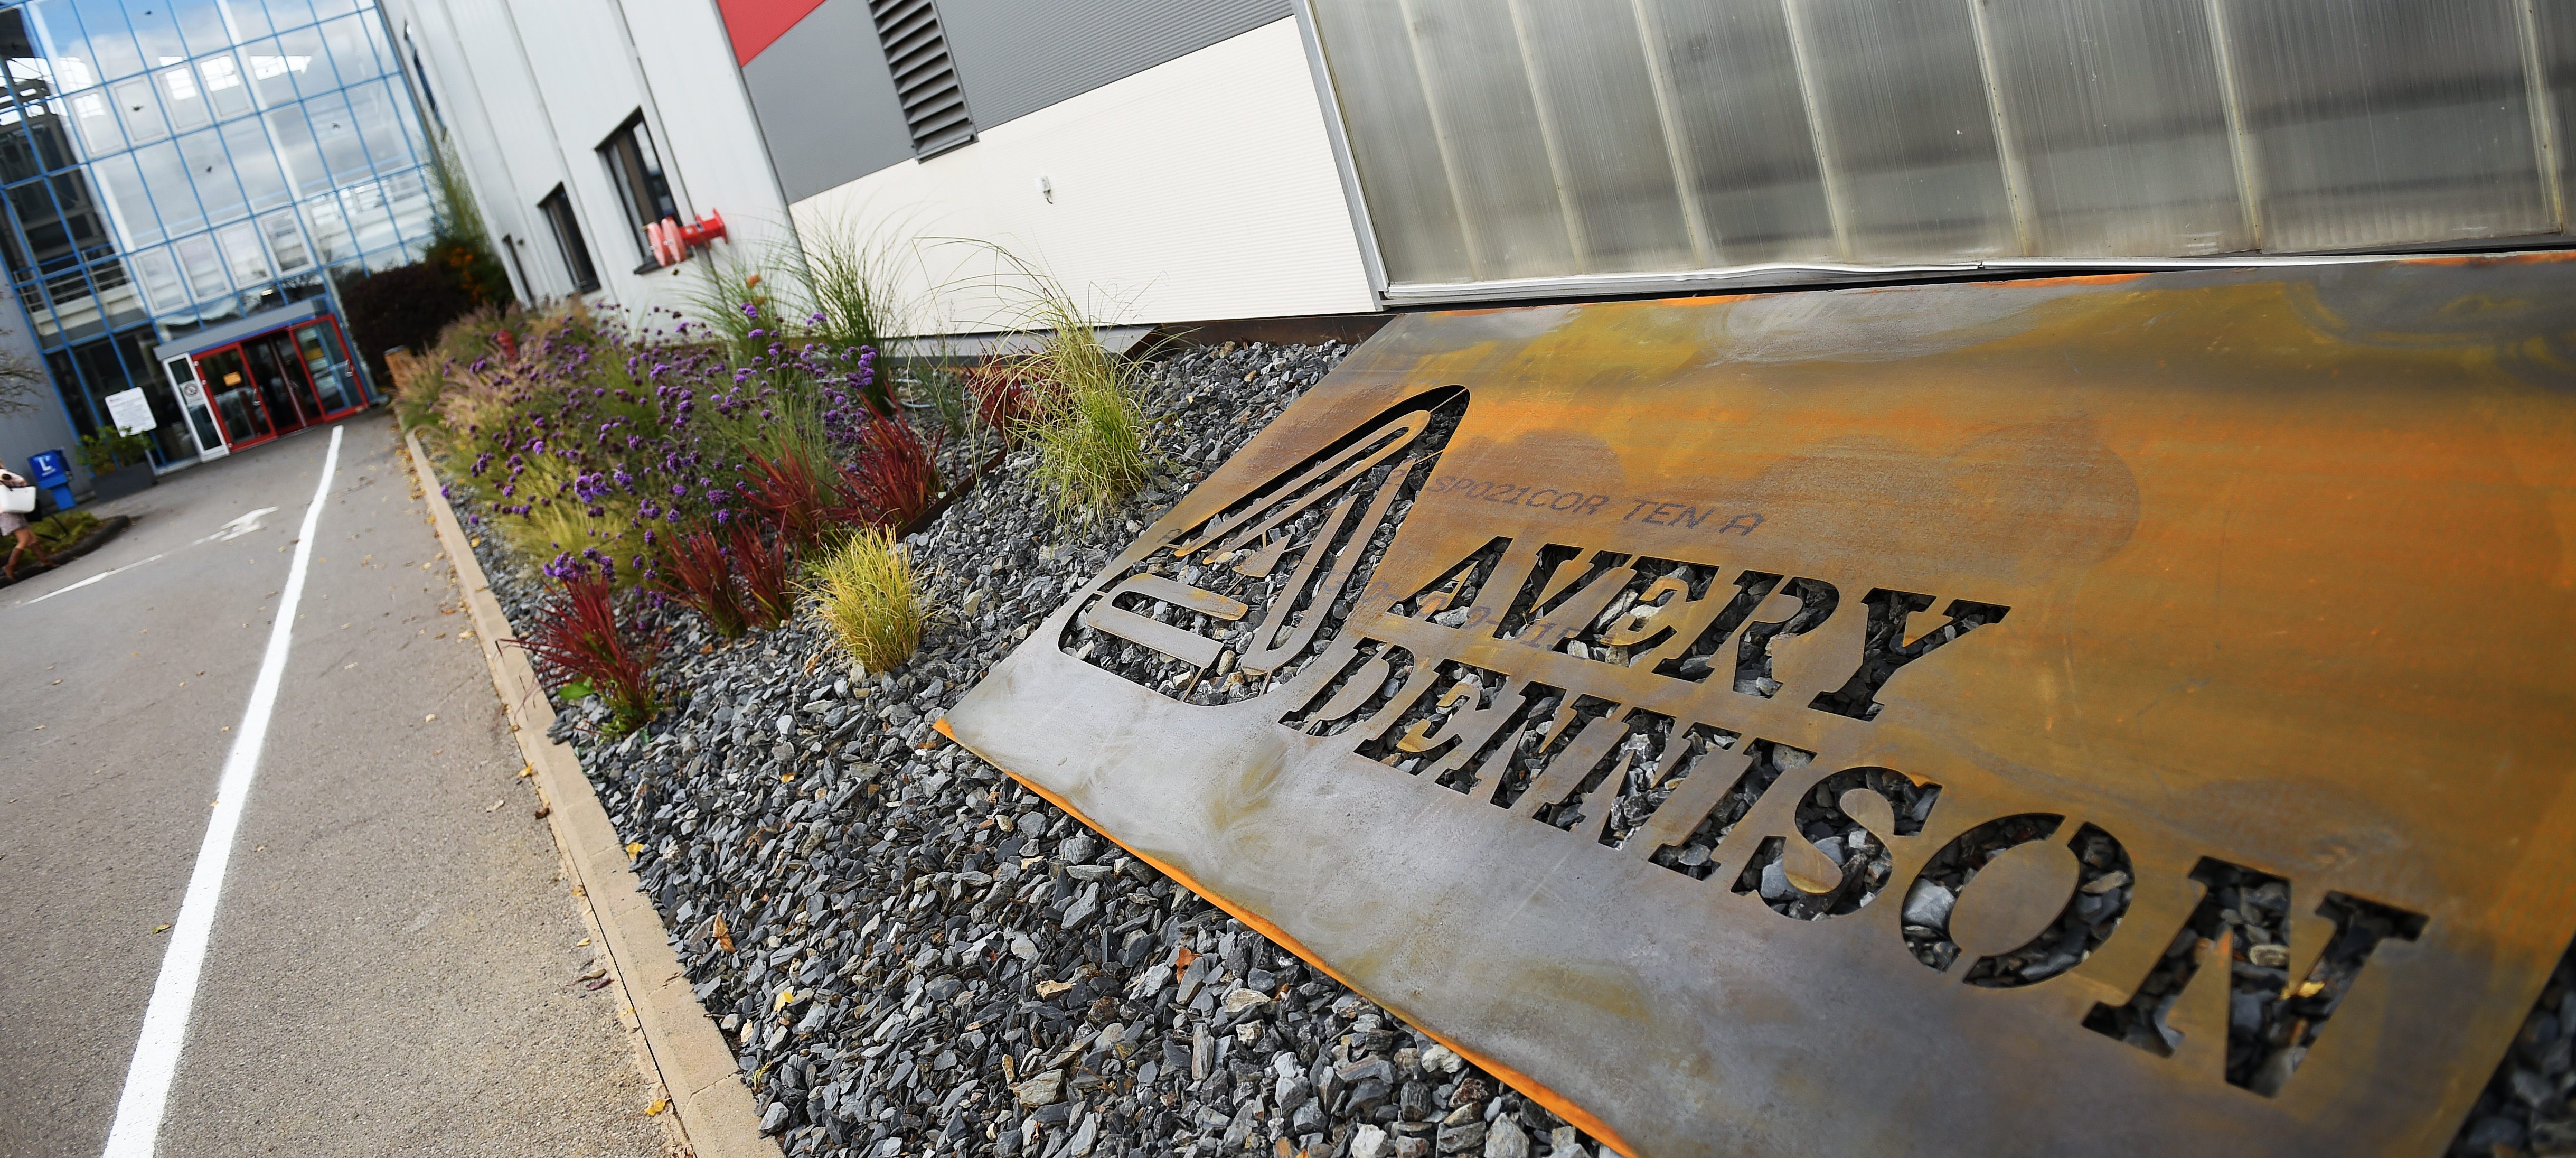 US-Konzern Avery Dennison investiert 65 Millionen Dollar in Luxemburger Industriestandort